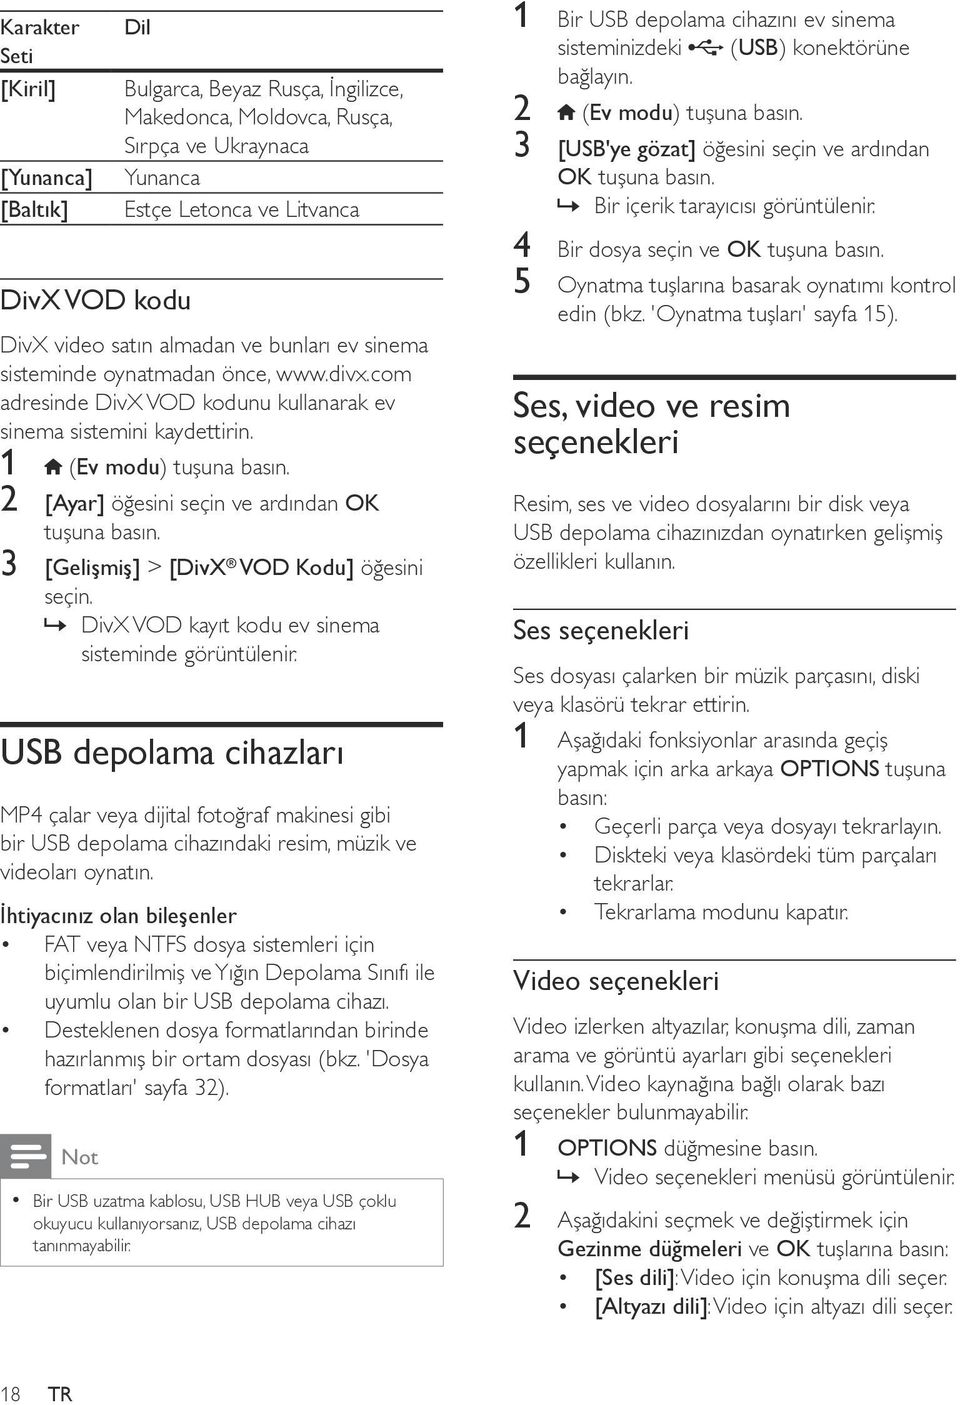 1 (Ev modu) 2 [Ayar] öğesini seçin ve ardından OK 3 [Gelişmiş] > [DivX VOD Kodu] öğesini seçin. DivX VOD kayıt kodu ev sinema sisteminde görüntülenir.